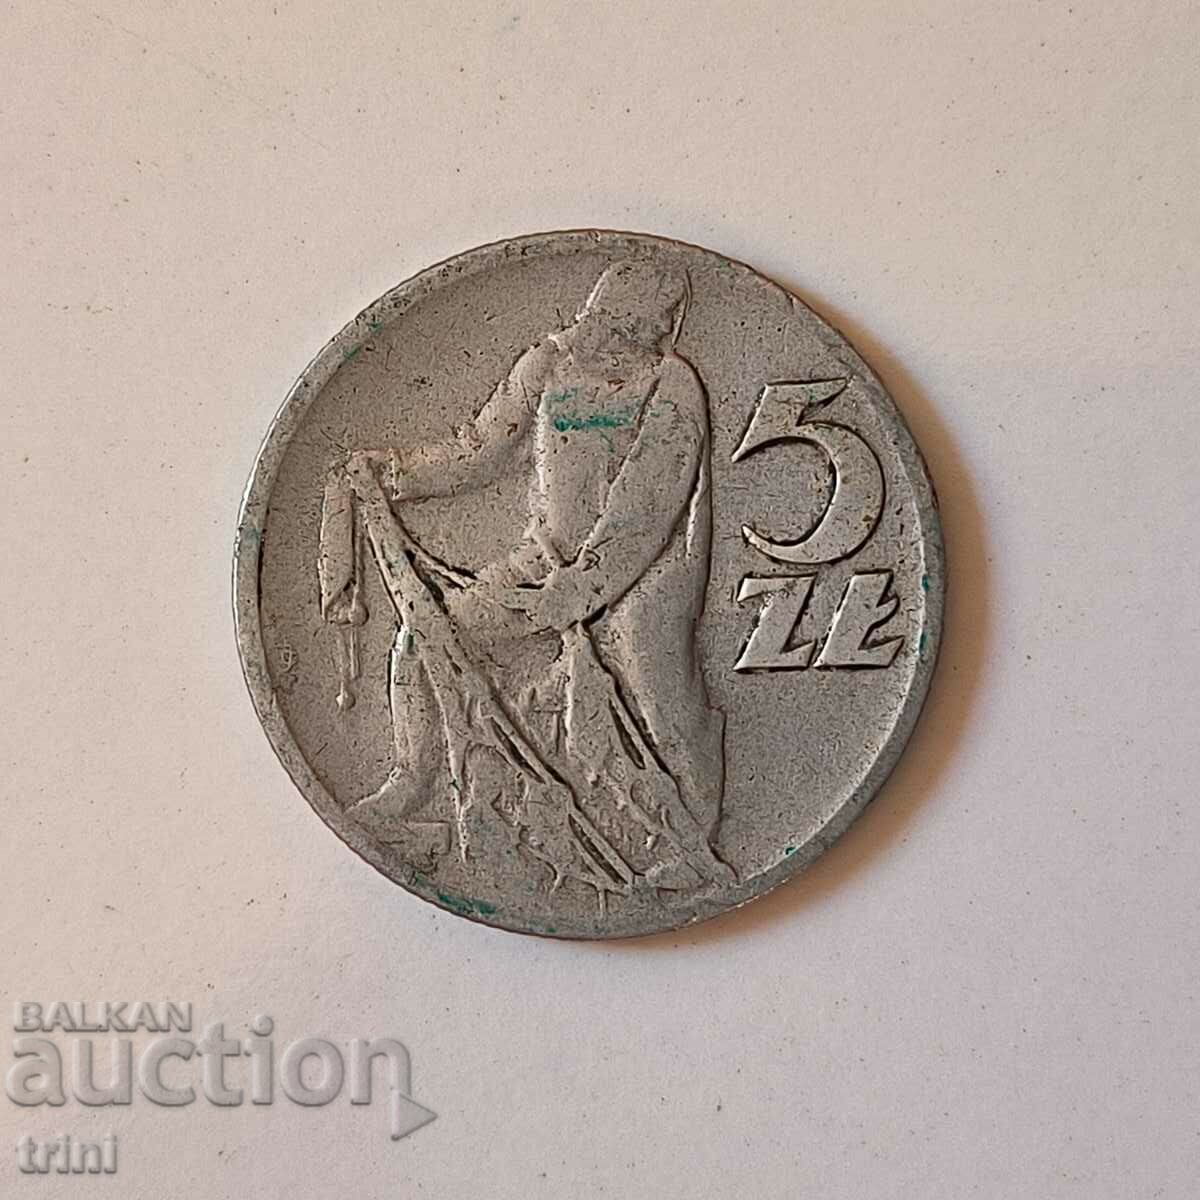 Poland 5 zlotys 1959 b61